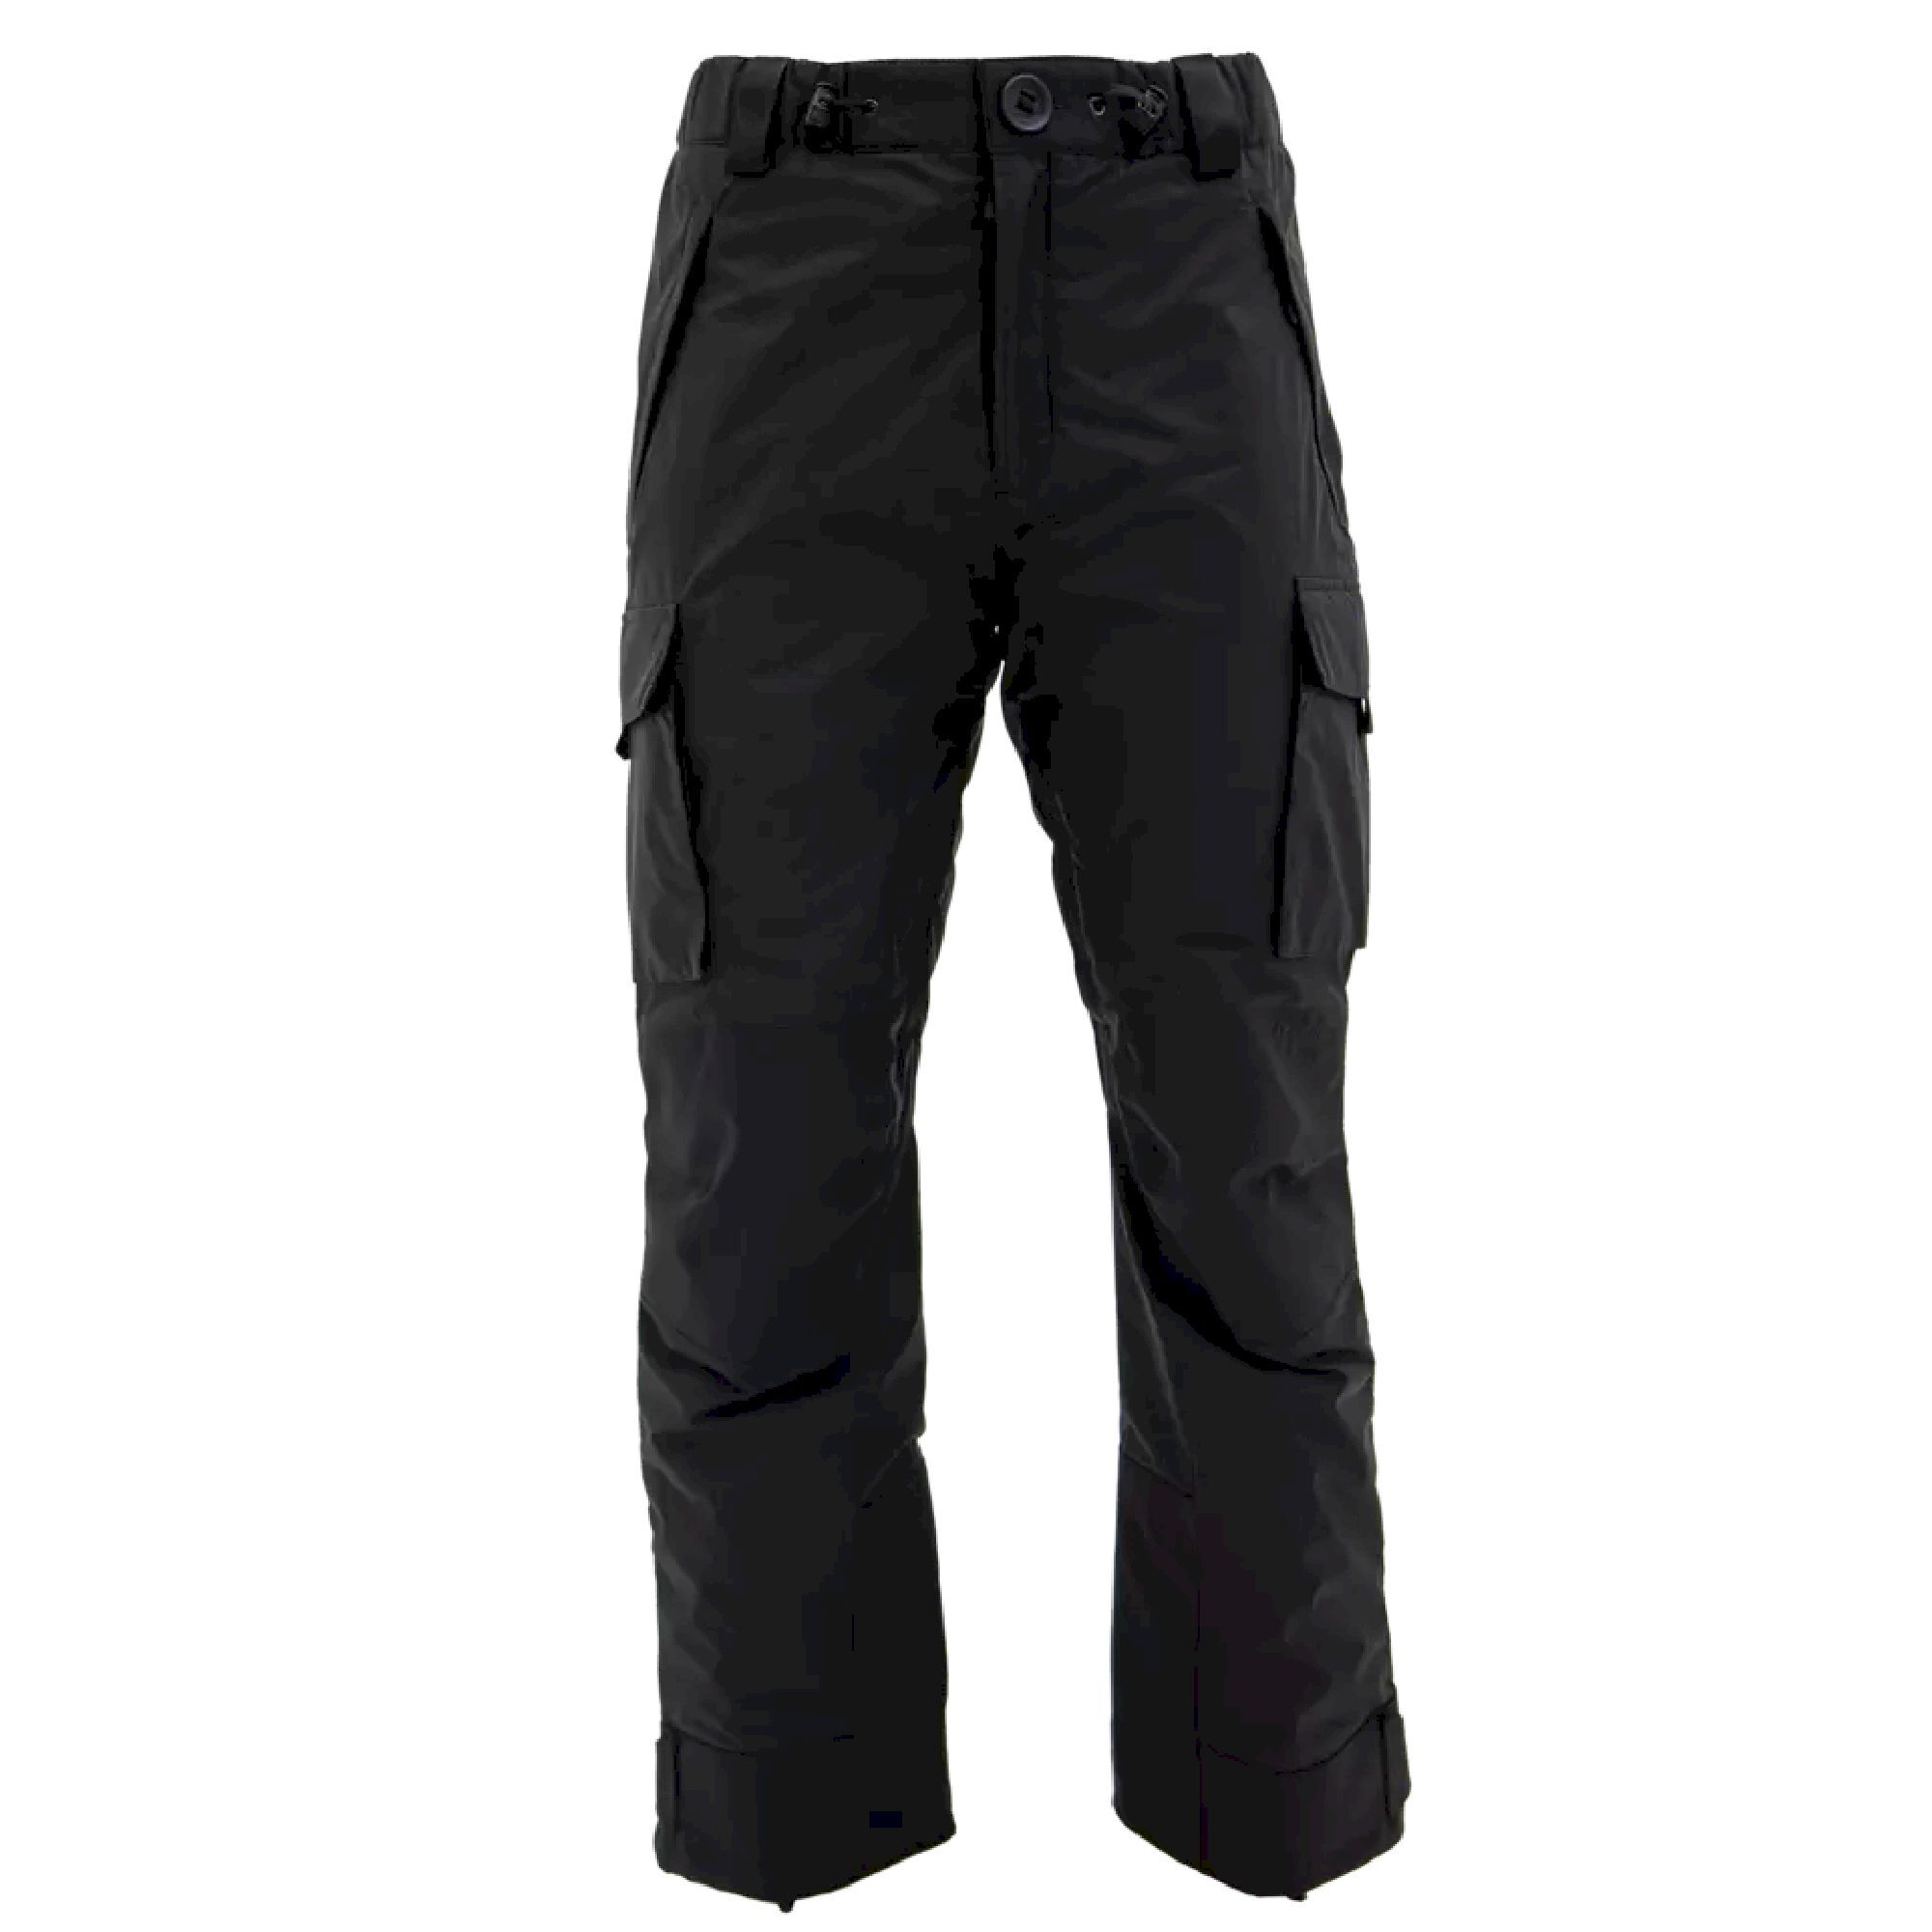 Carinthia MIG 4.0 Trousers - Pantalón de senderismo - Hombre